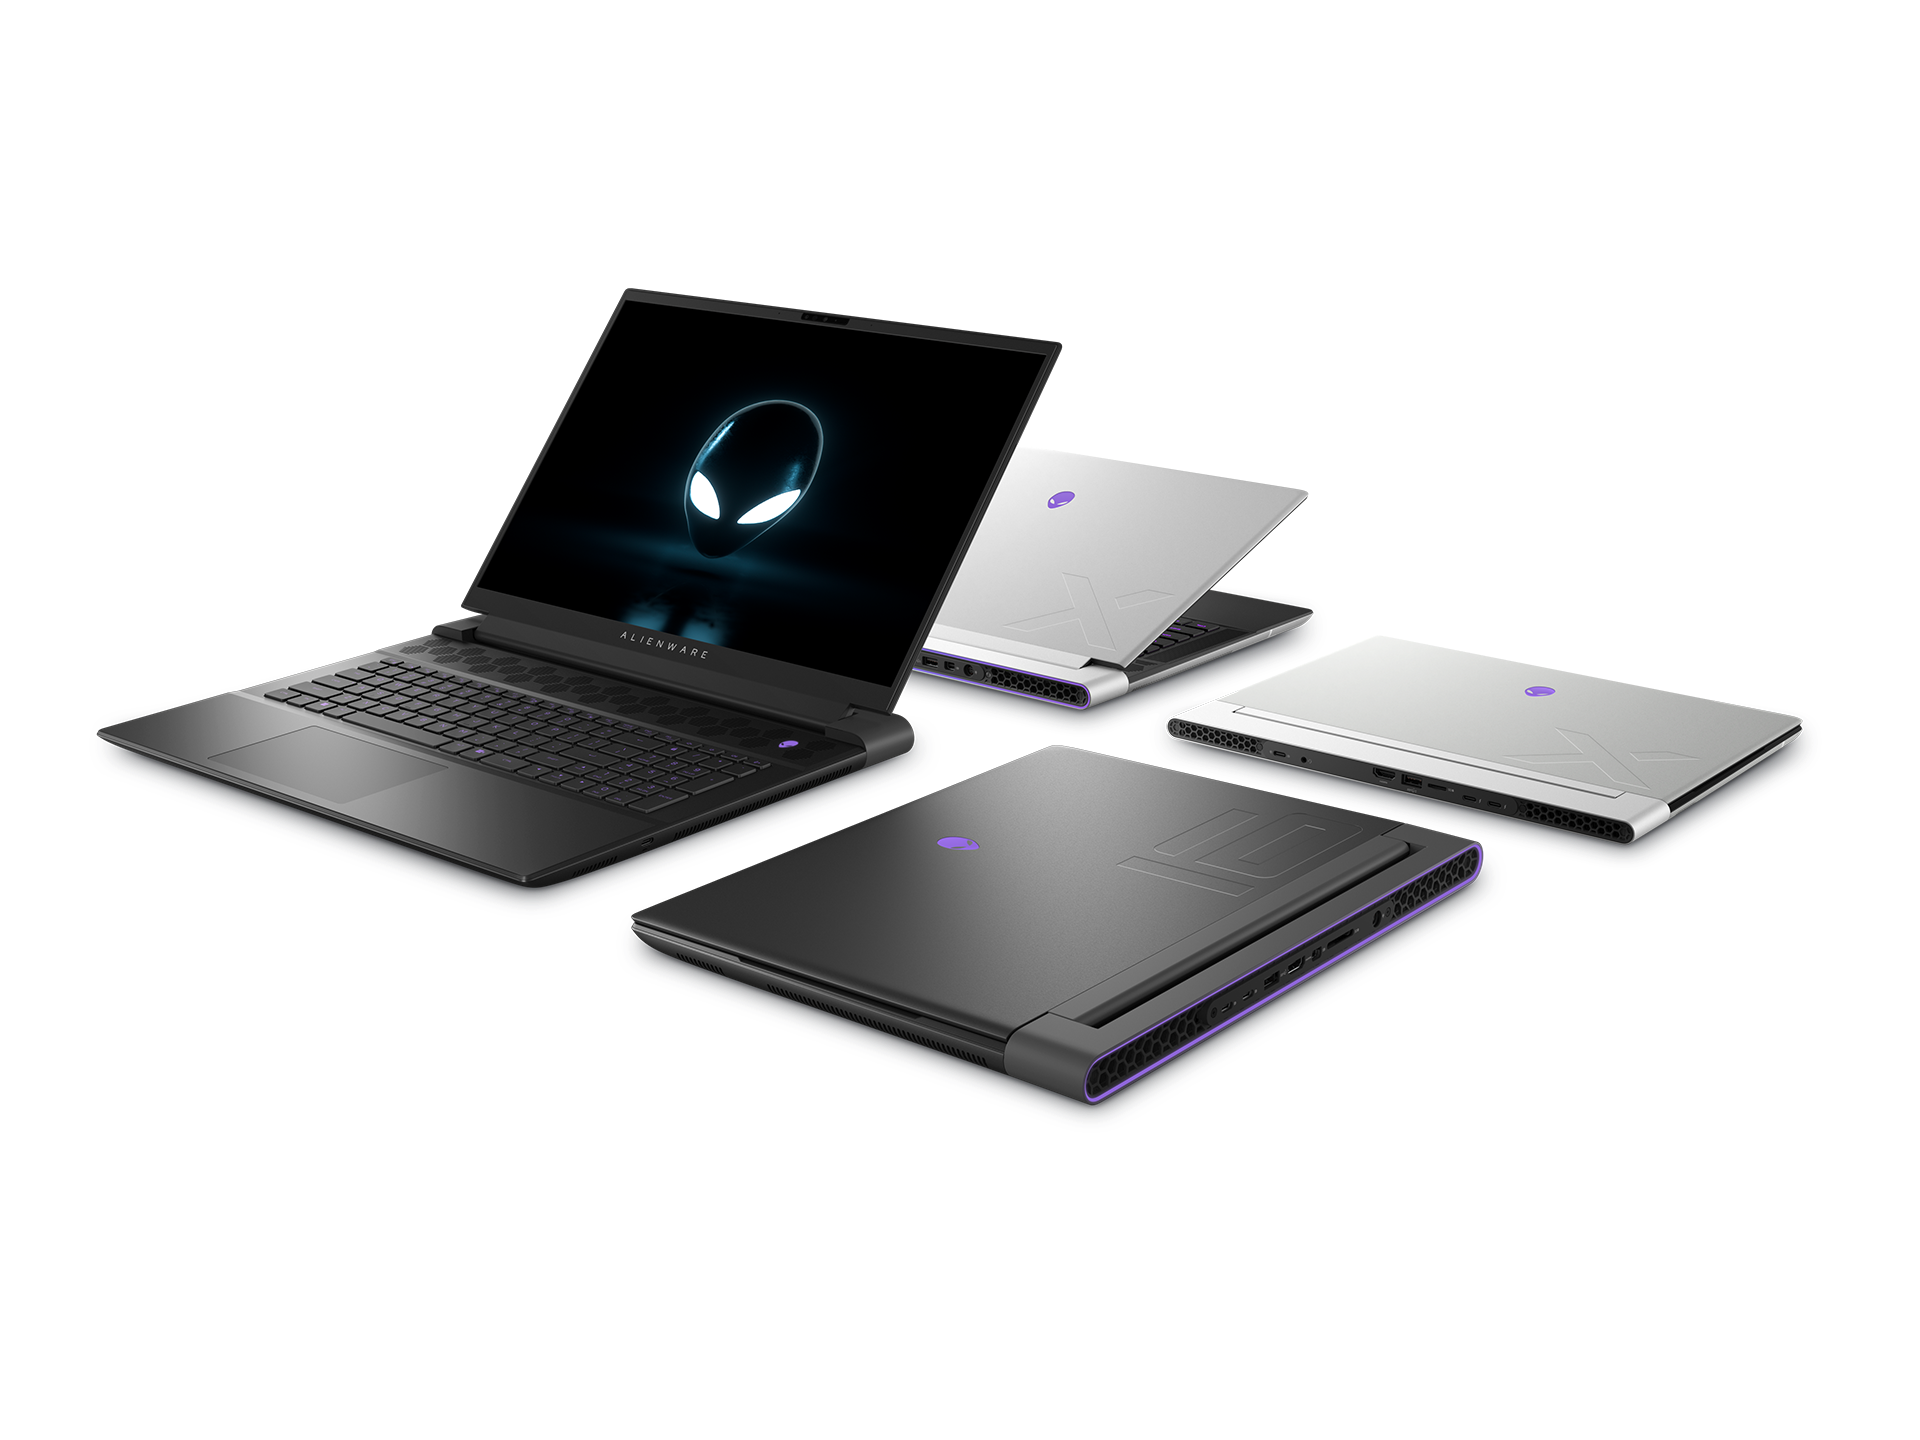 Laptop Alienware